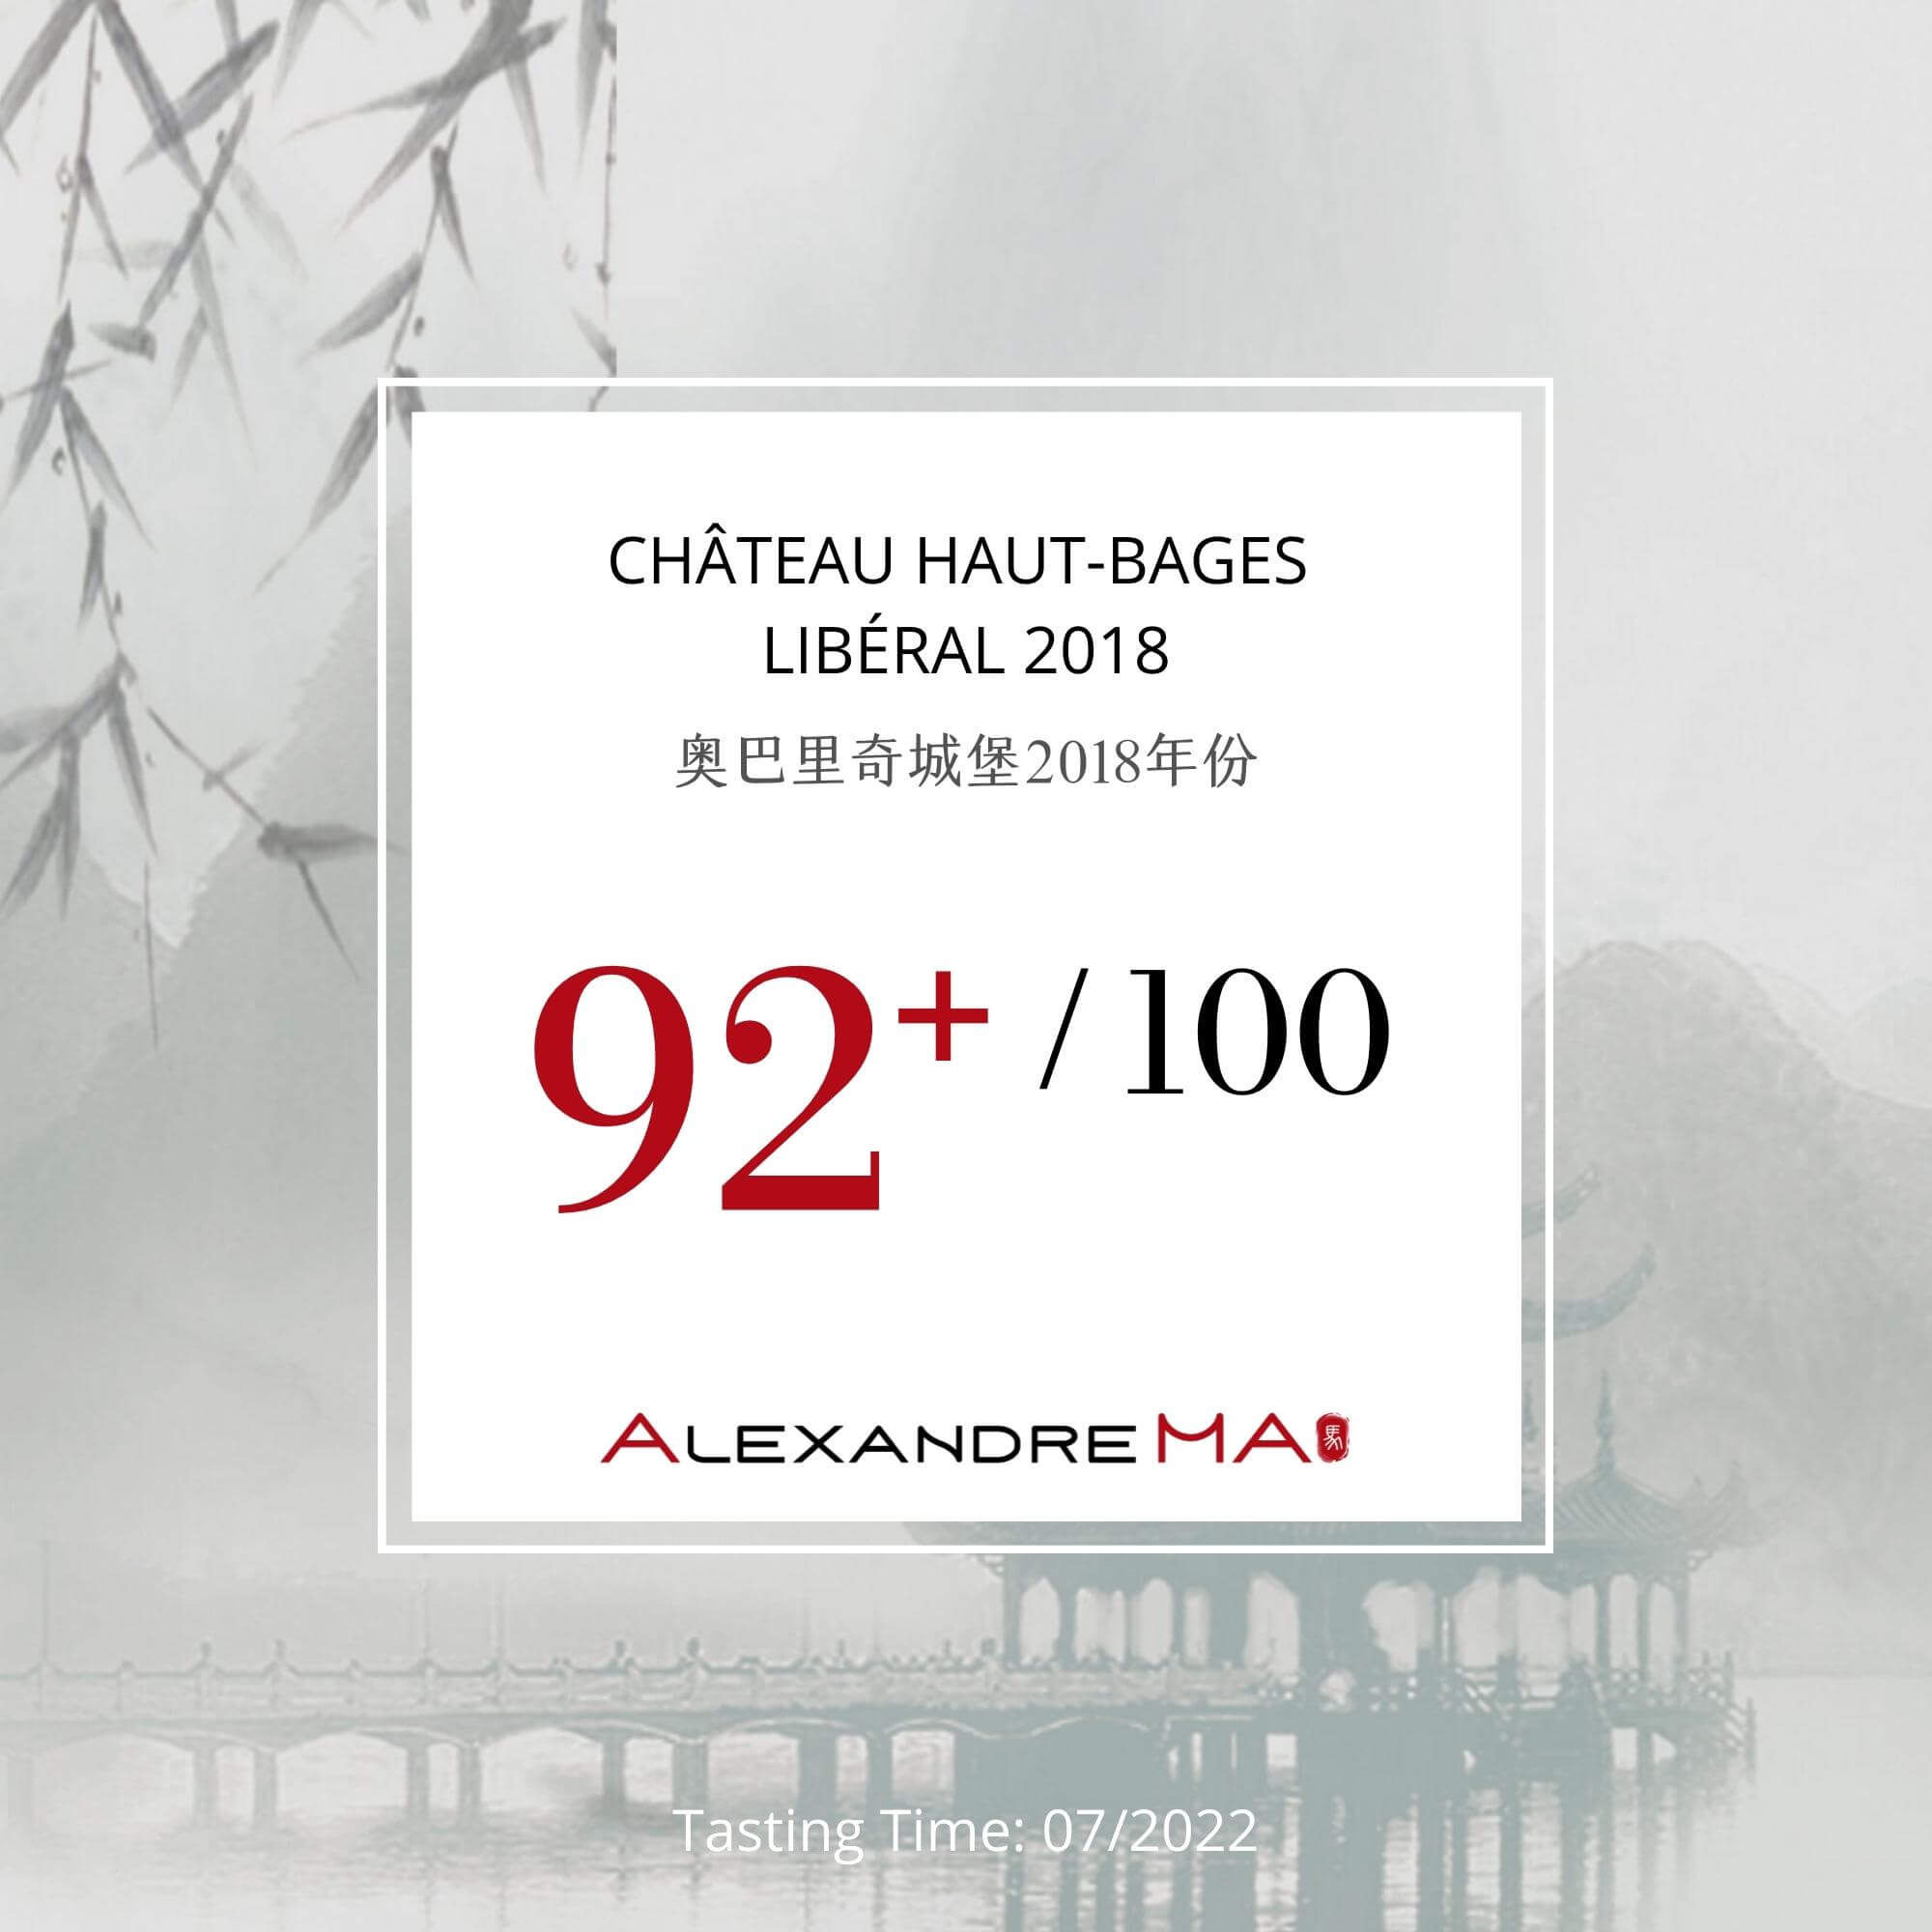 Château Haut-Bages Libéral 2018 - Alexandre MA